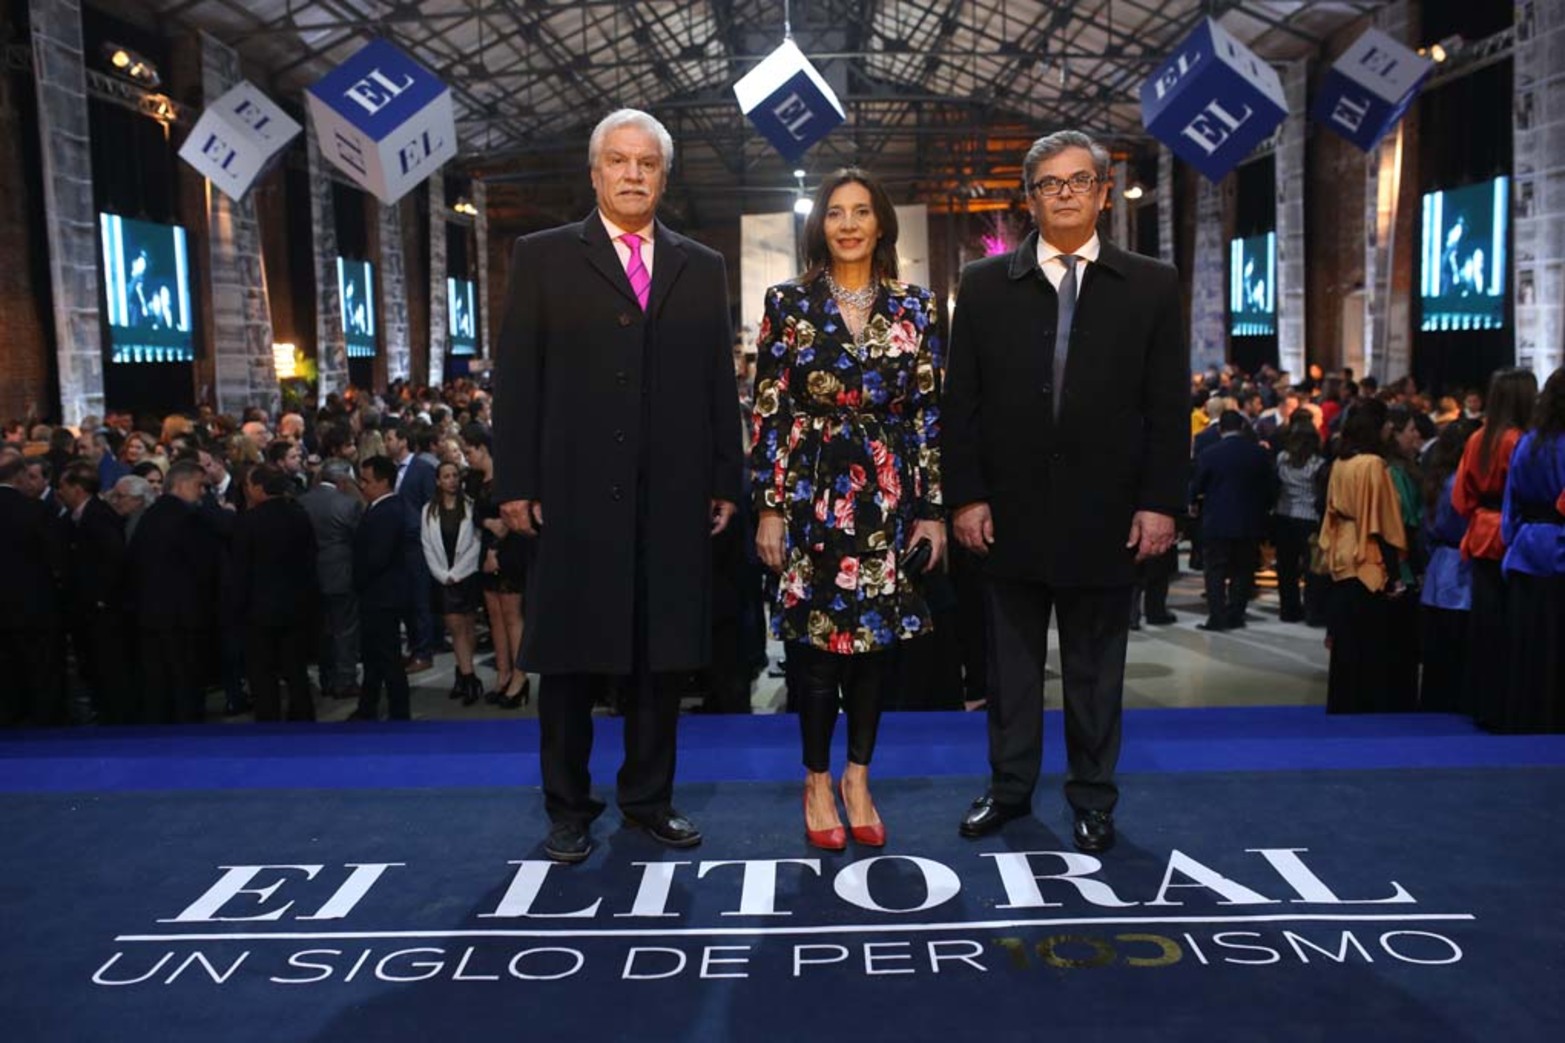 Guillermo Alvarez, Claudia Veronesse y Miguel Irigoyen